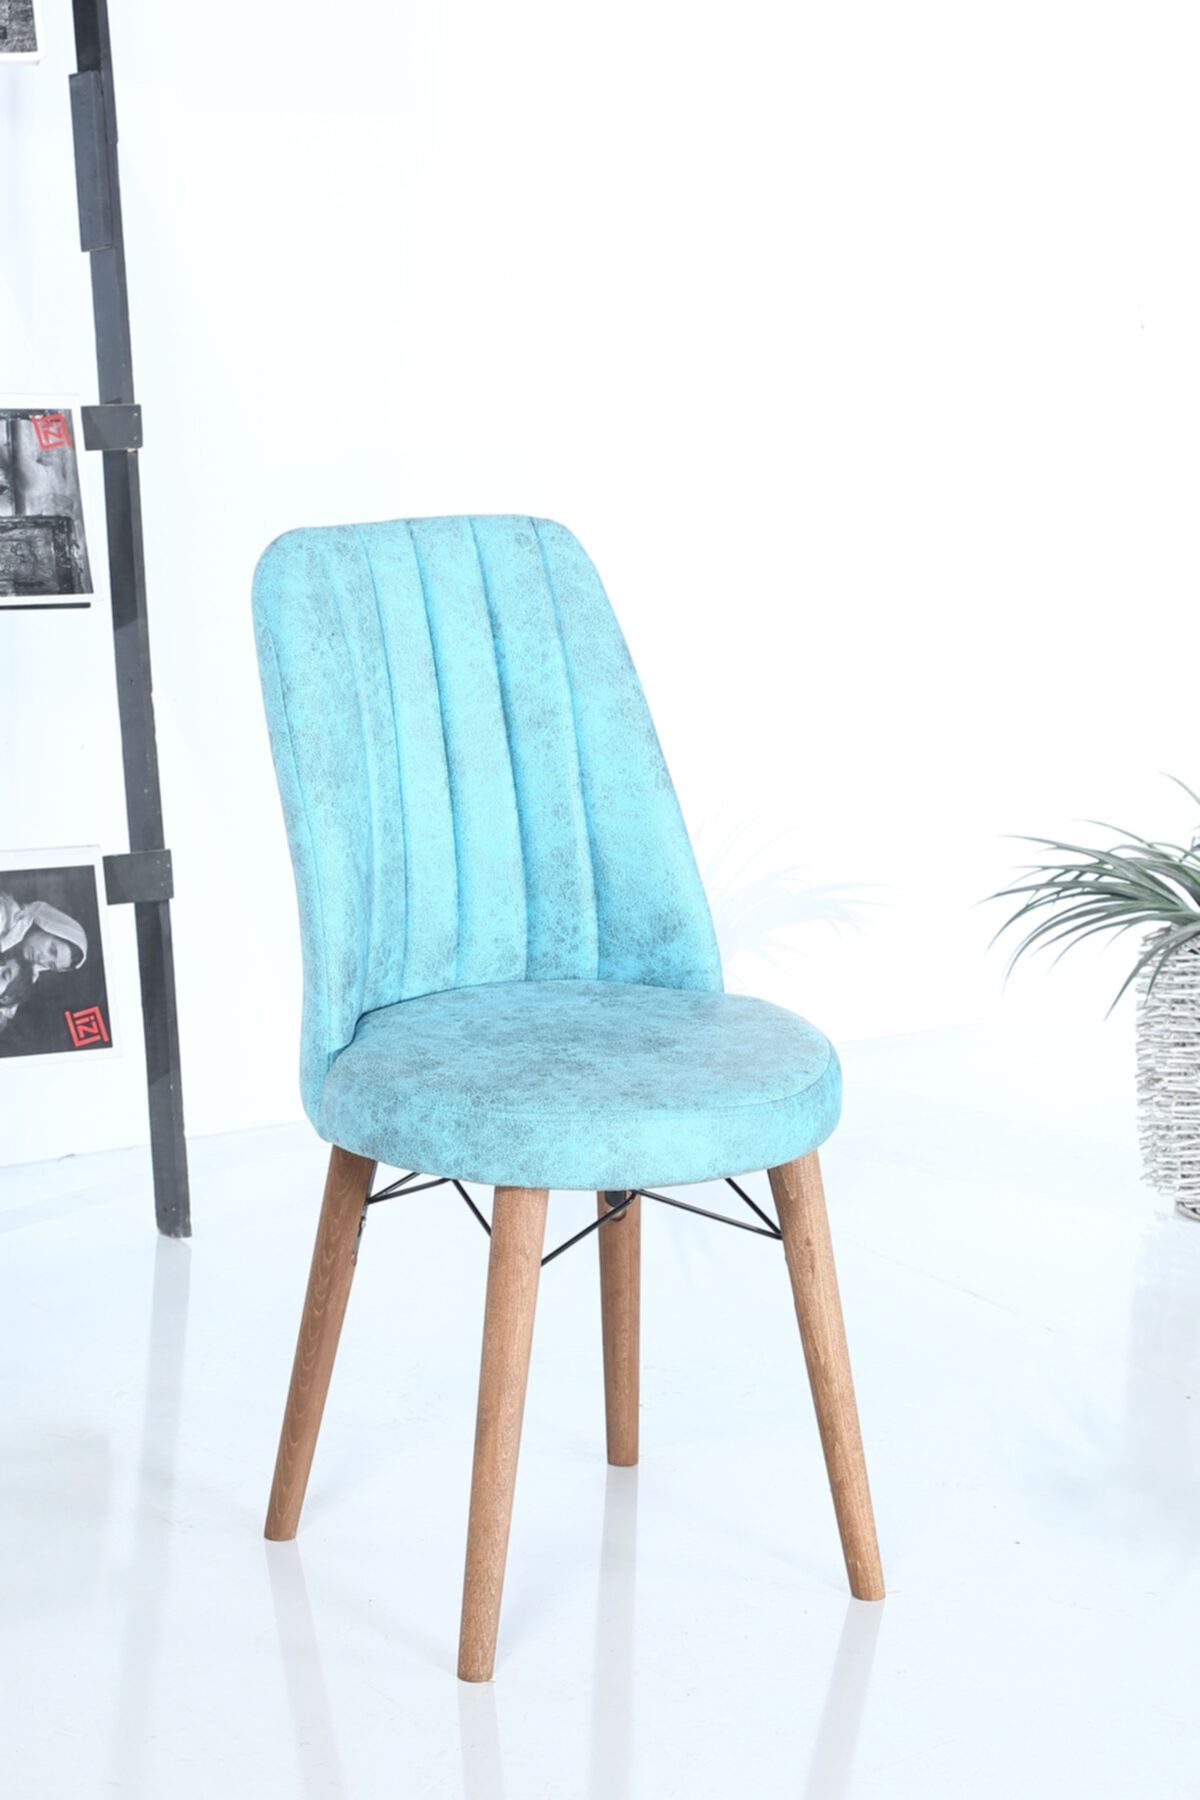 İnjir Home Woldo Serisi 1 Adet Sandalye Mutfak Sandalyesi Yemek Odası Sandalyesi - Turkuaz